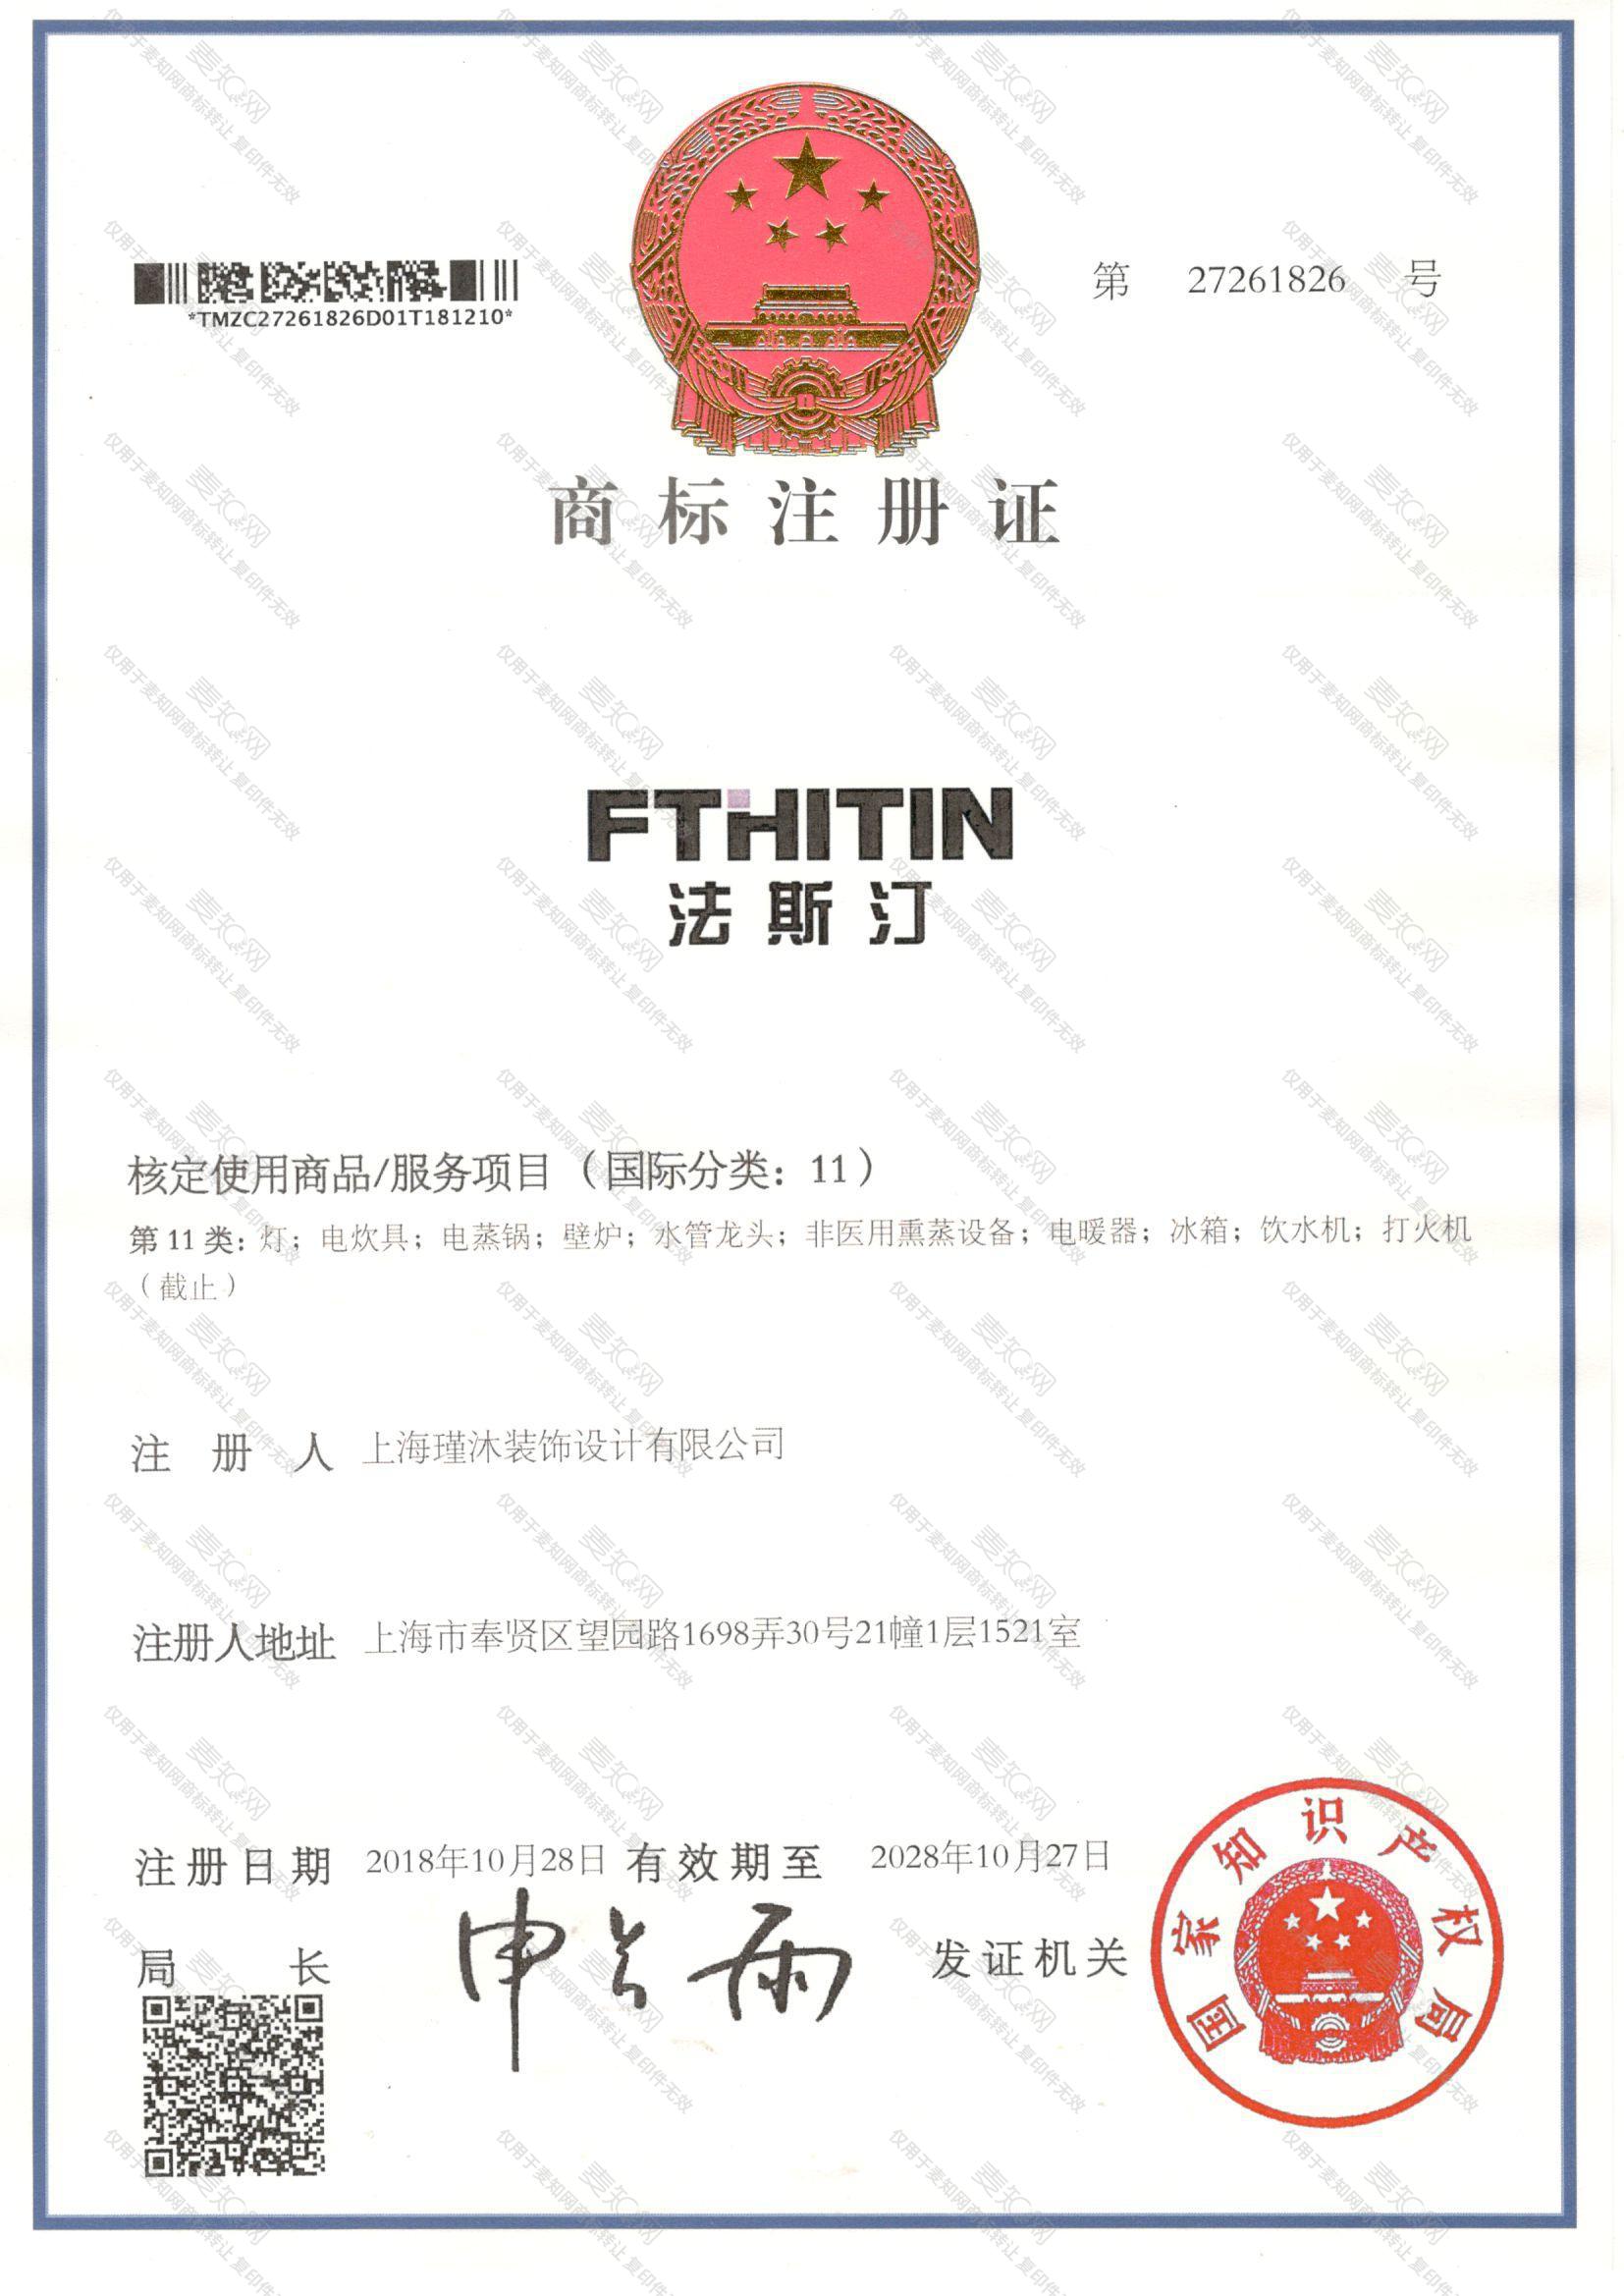 法斯汀 FTHITIN注册证